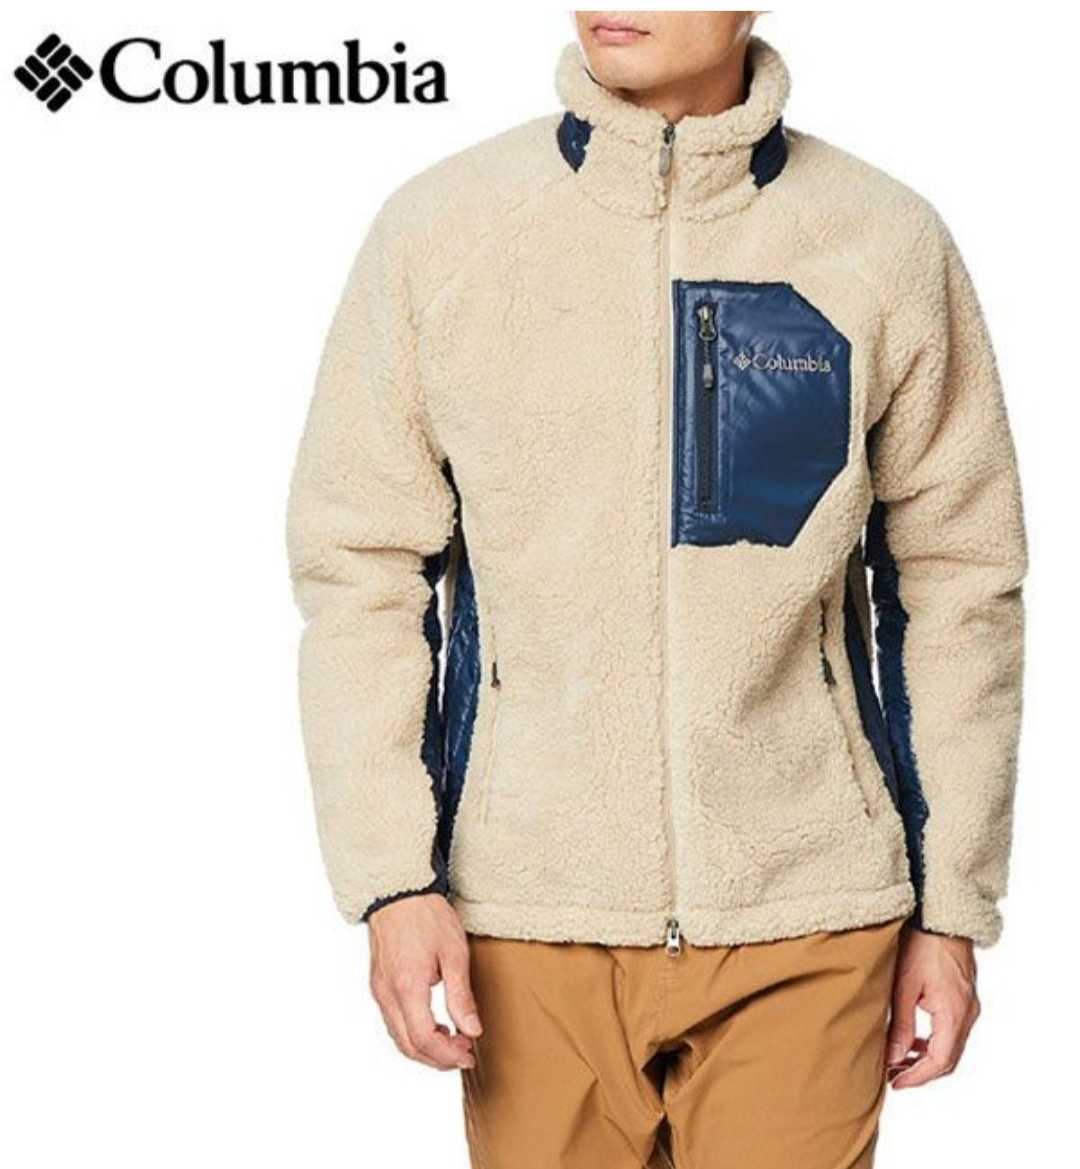 columbiaコロンビア アーチャーリッジ ジャケット PM3743 (L) ベージュ